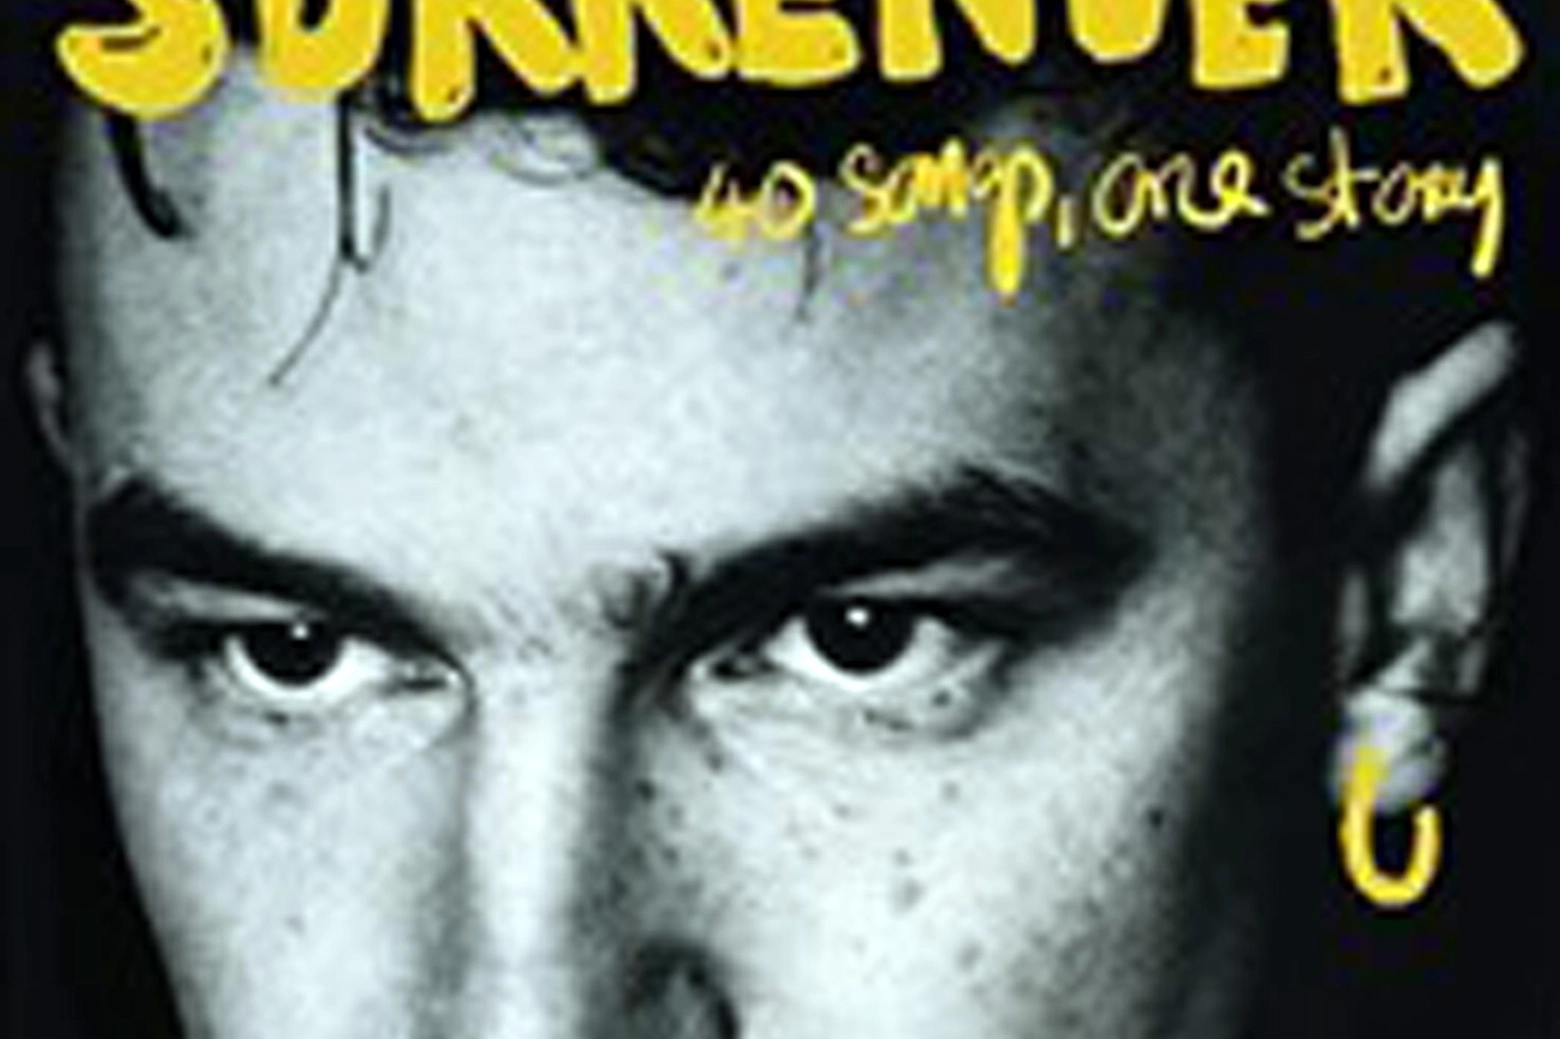 La copertina dell'autobiografia di Bono Vox, intitolata "Surrender"